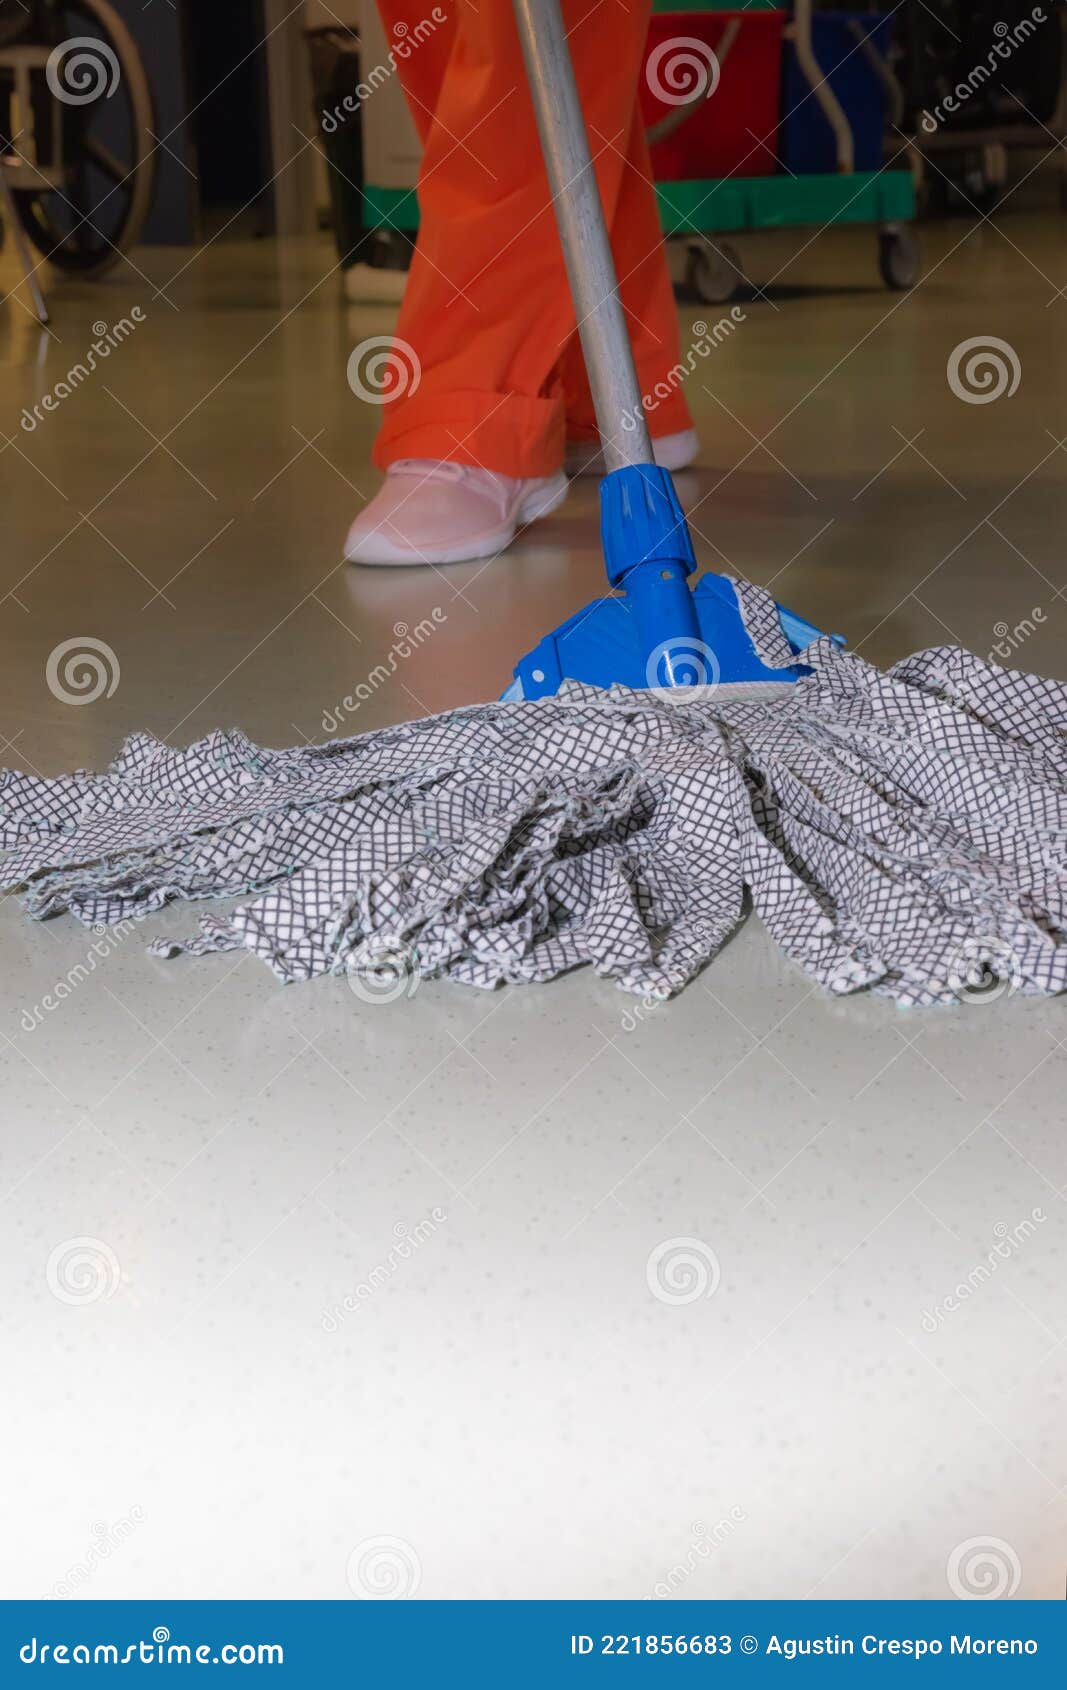 Limpiando Los Pisos De Un Quirófano Con Las Piernas De Una Mujer Limpiadora  Detrás Imagen de archivo - Imagen de sano, desinfectante: 221856683